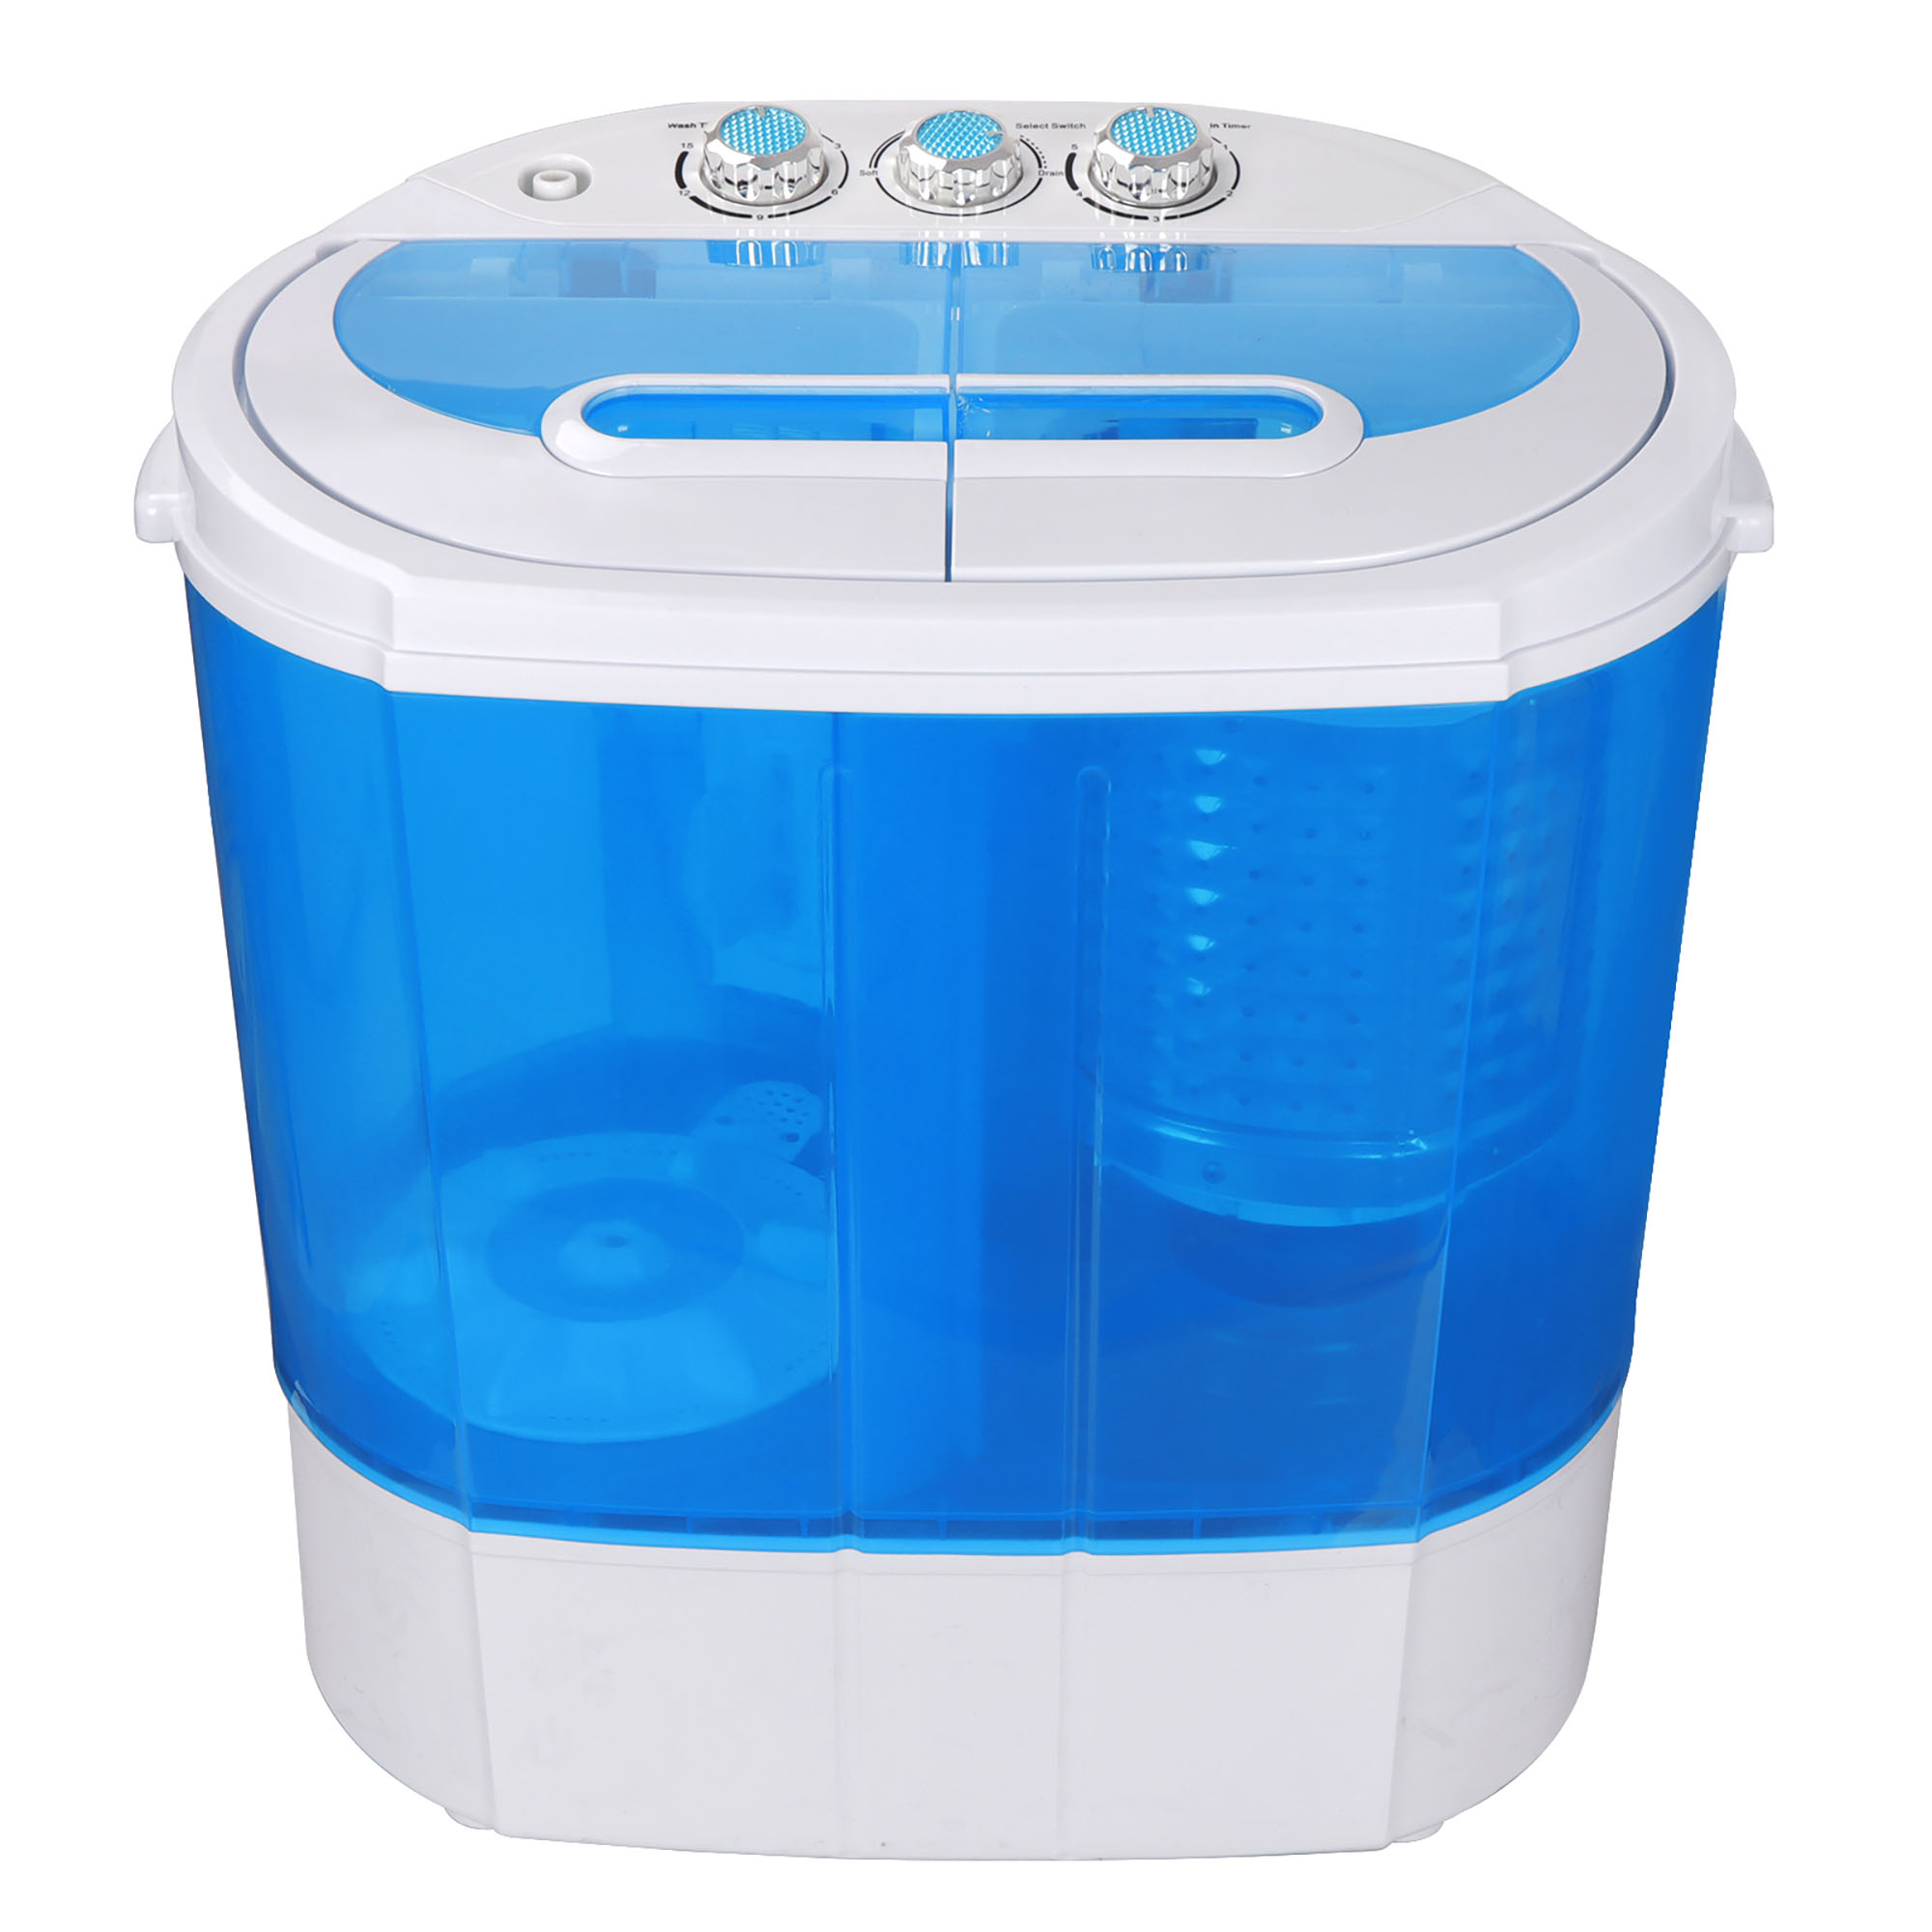 ZENSTYLE Portable Compact Wash machine 10lbs Washer (5.5 Wash